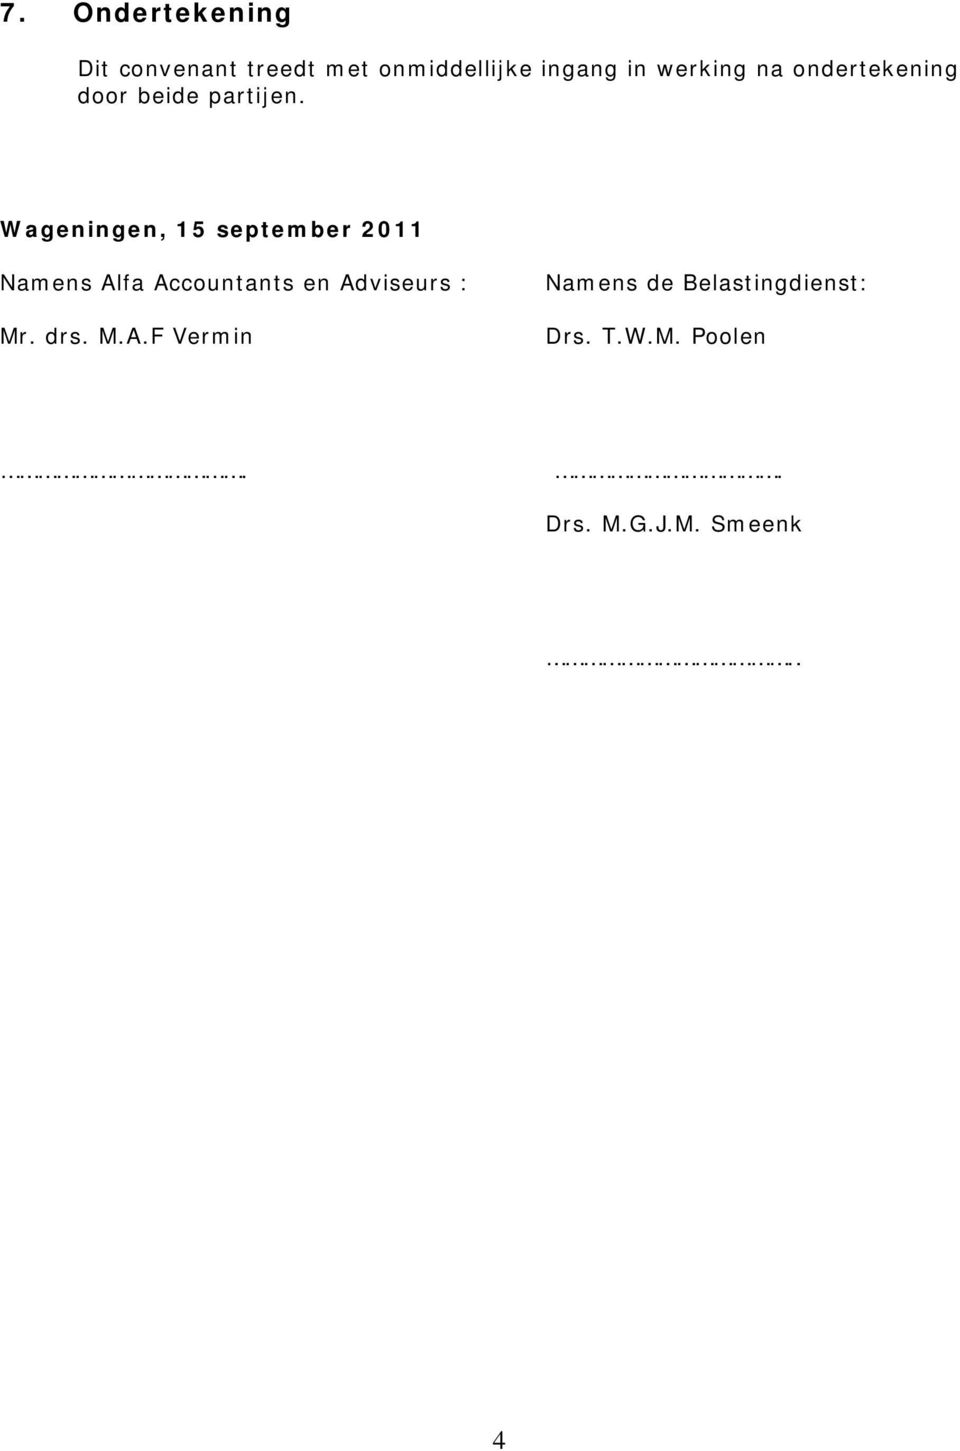 Wageningen, 15 september 2011 Namens Alfa Accountants en Adviseurs :